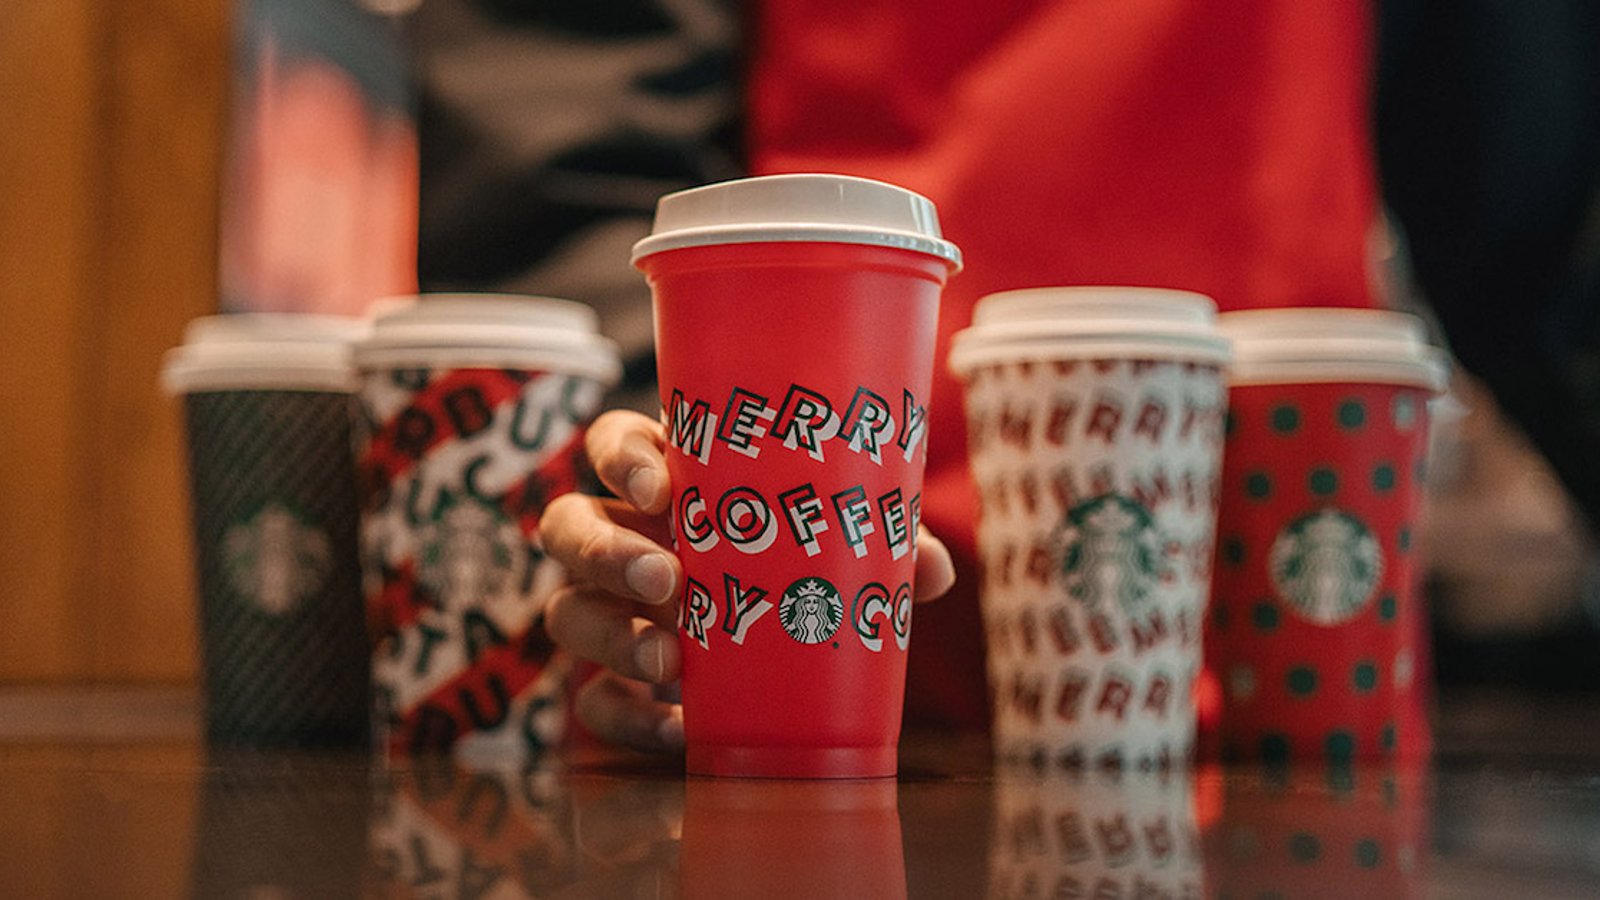 Si vous désirez une tasse réutilisable gratuite pour la période des Fêtes, passez chez Starbucks le 7 novembre!